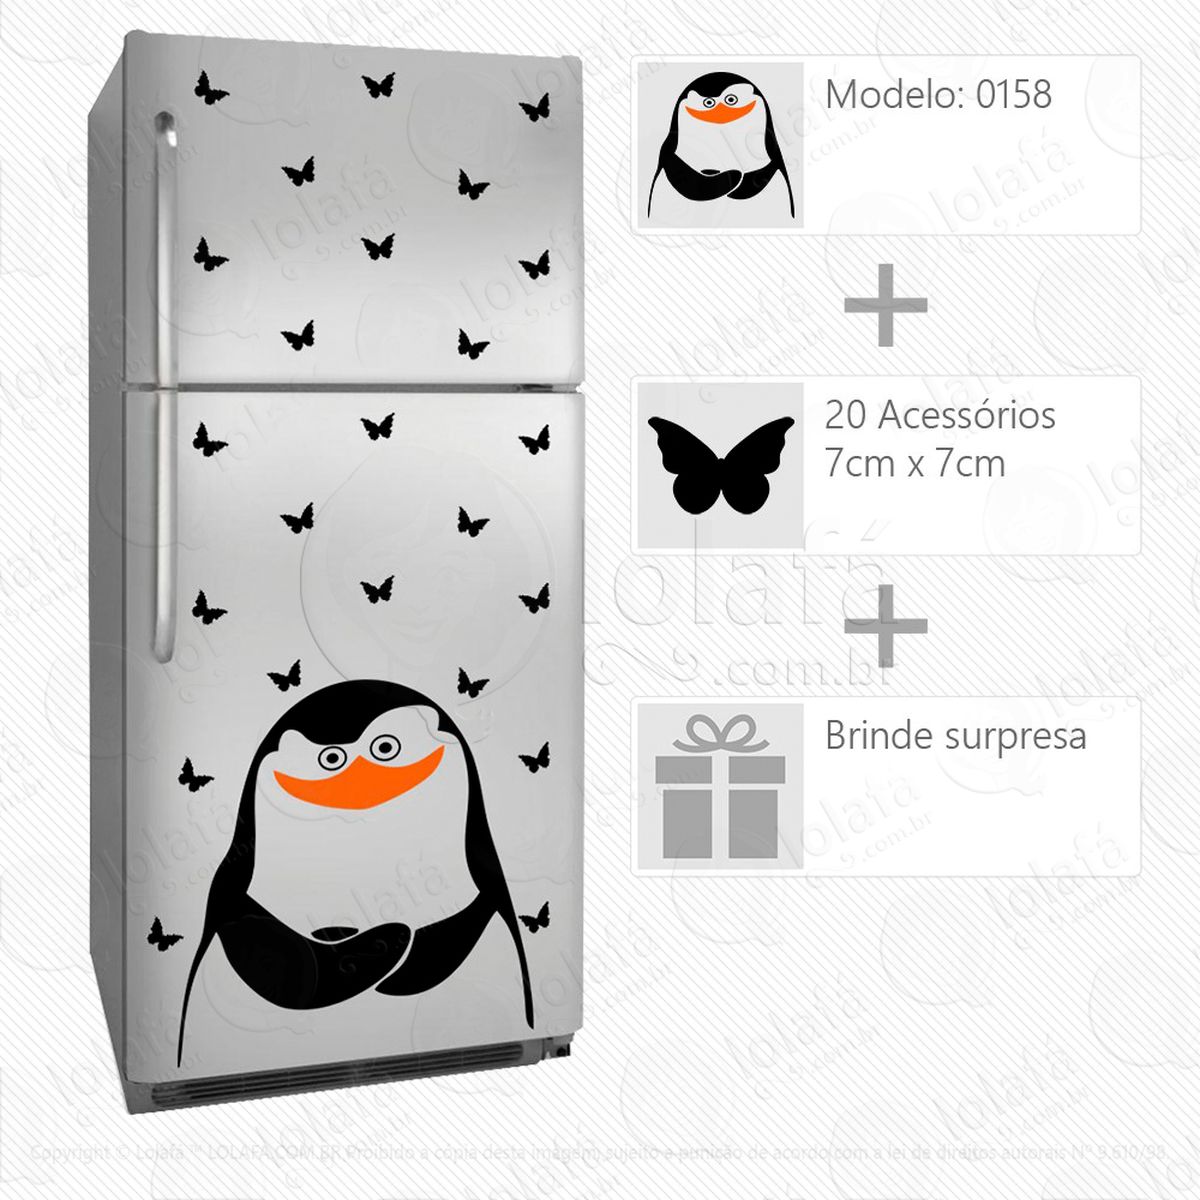 pinguim adesivo para geladeira e frigobar - mod:158